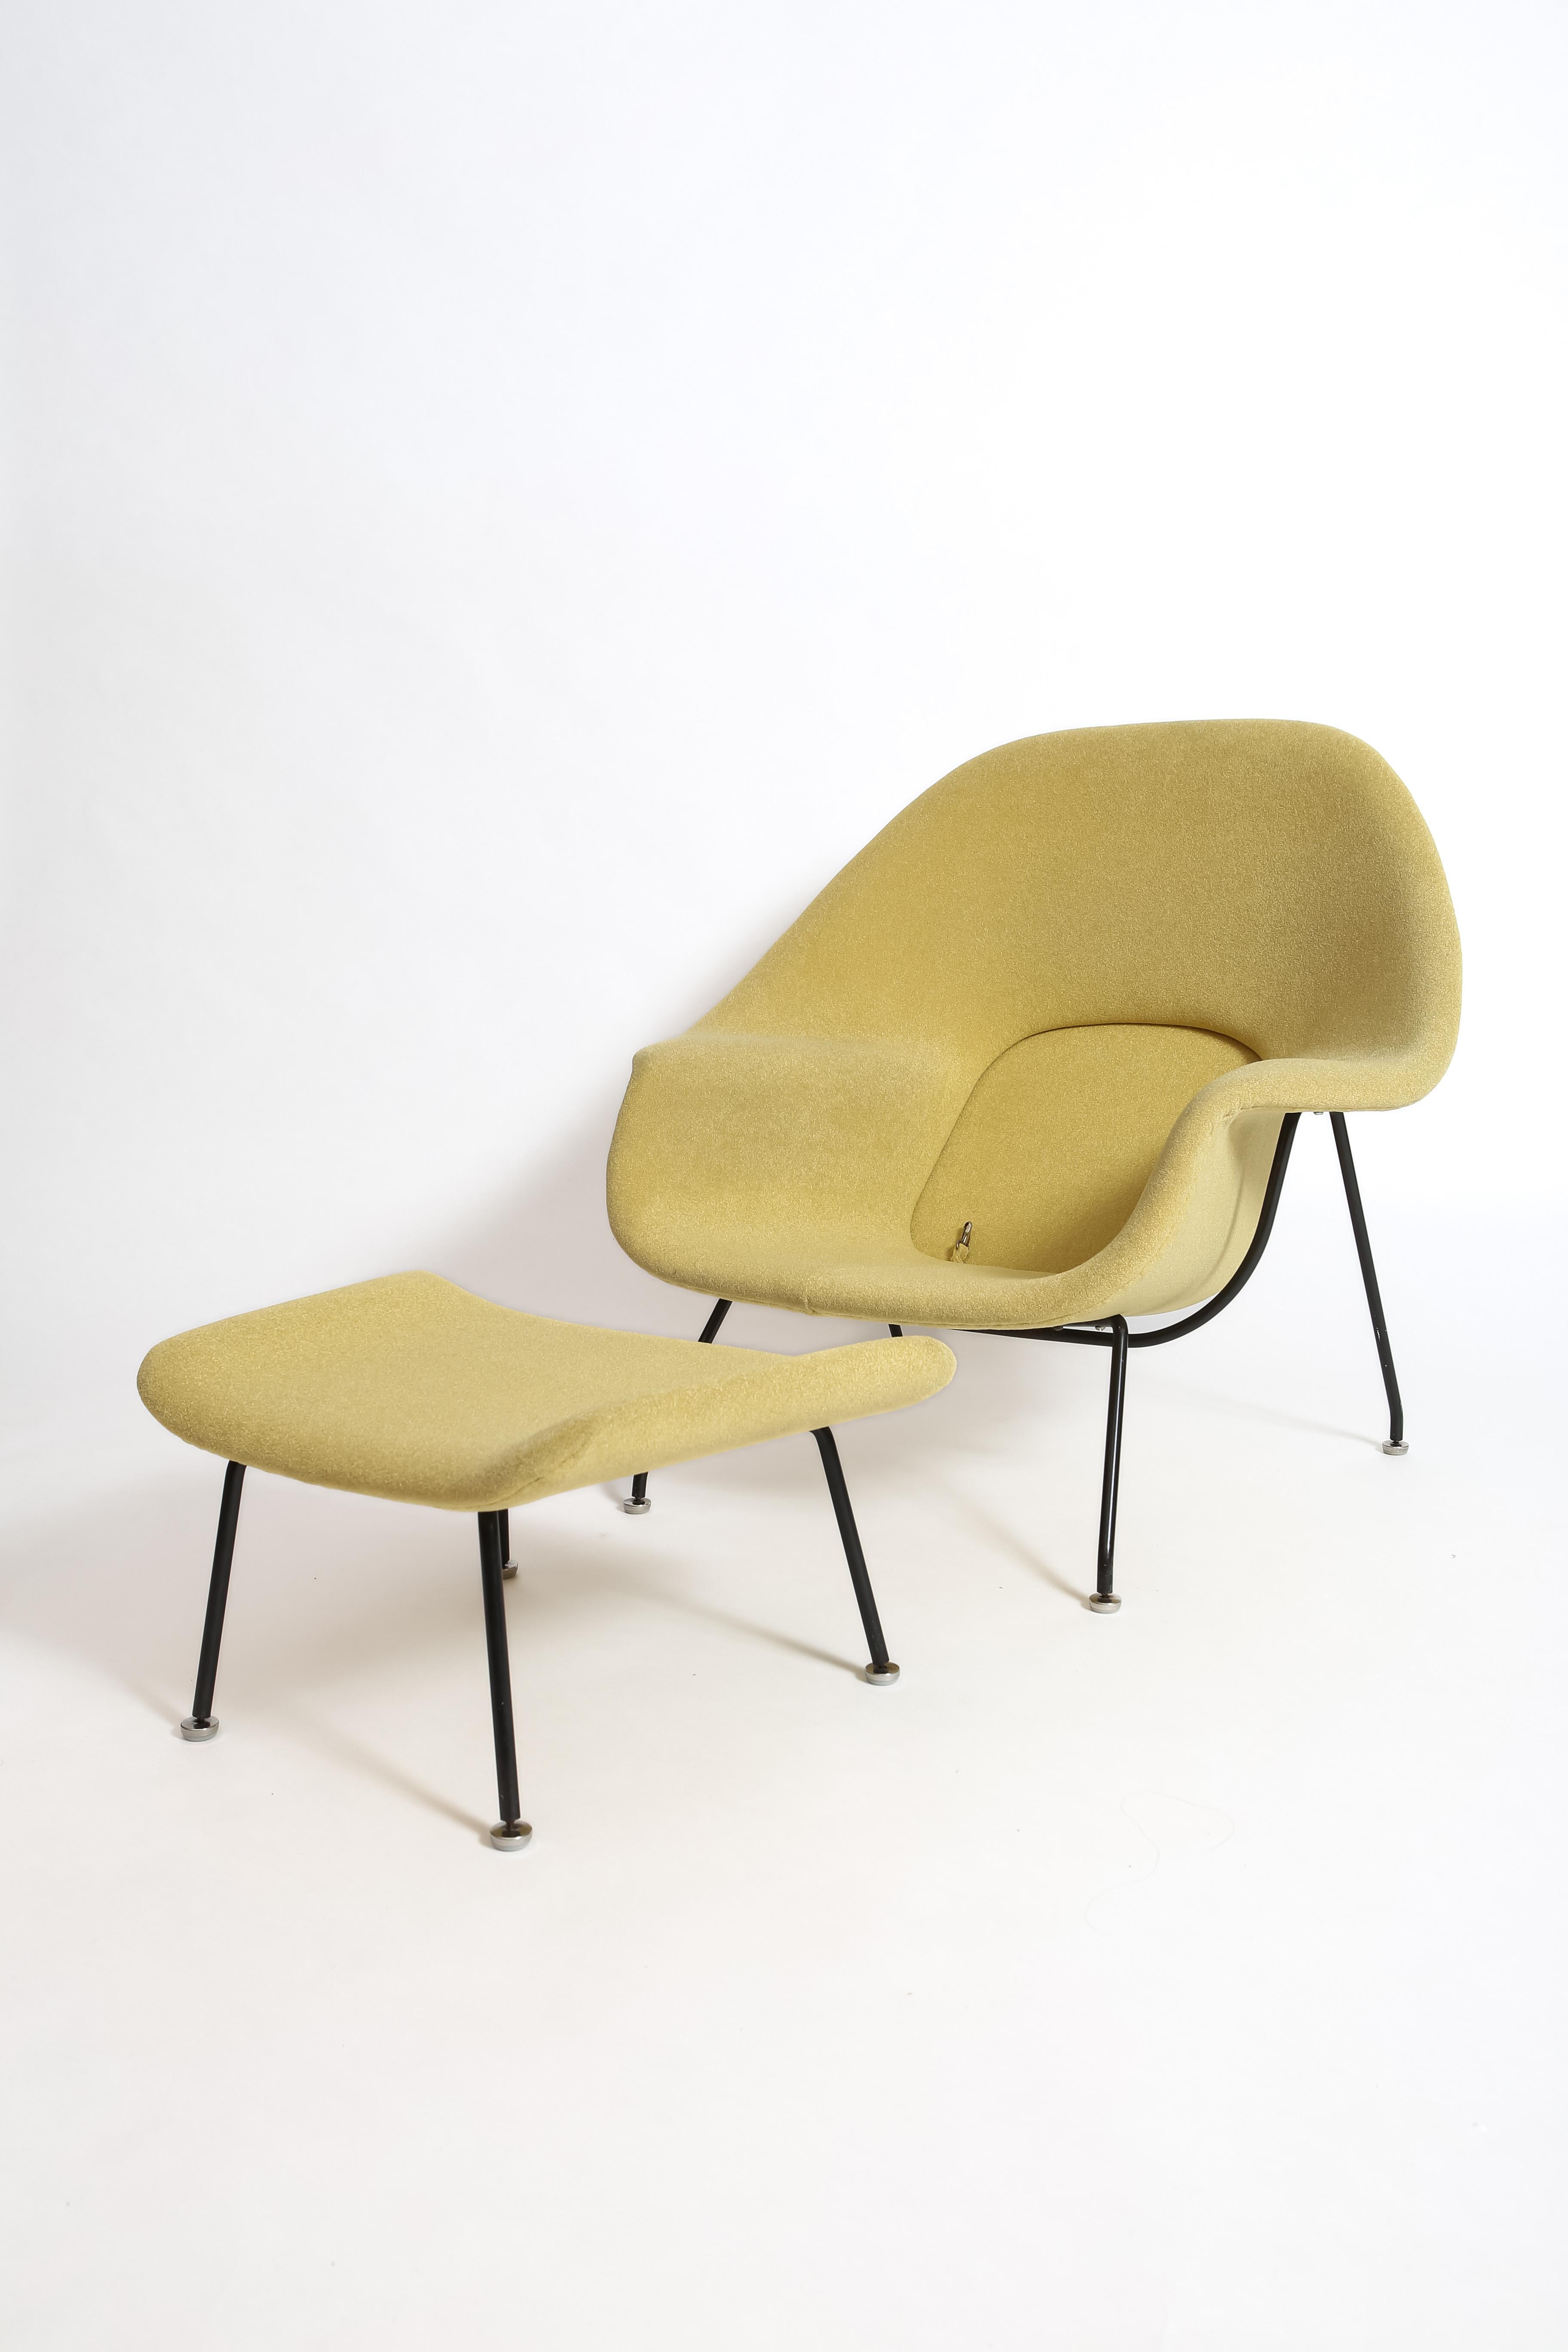 American Eero Saarinen Early Womb Chair for Knoll